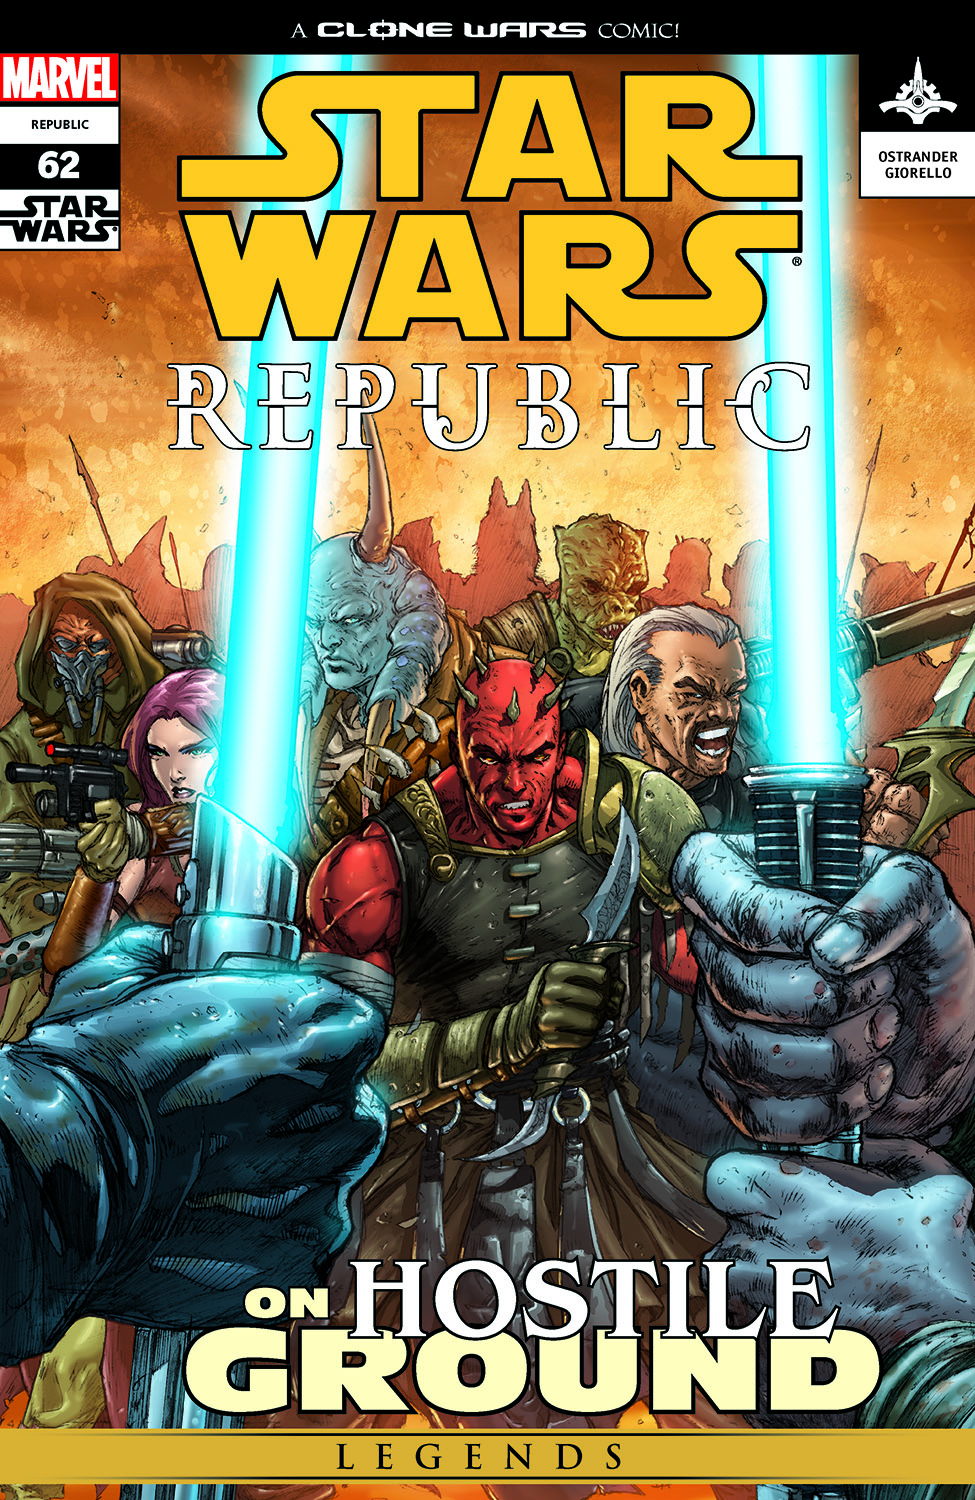 Star Wars: Republic (2002) #62